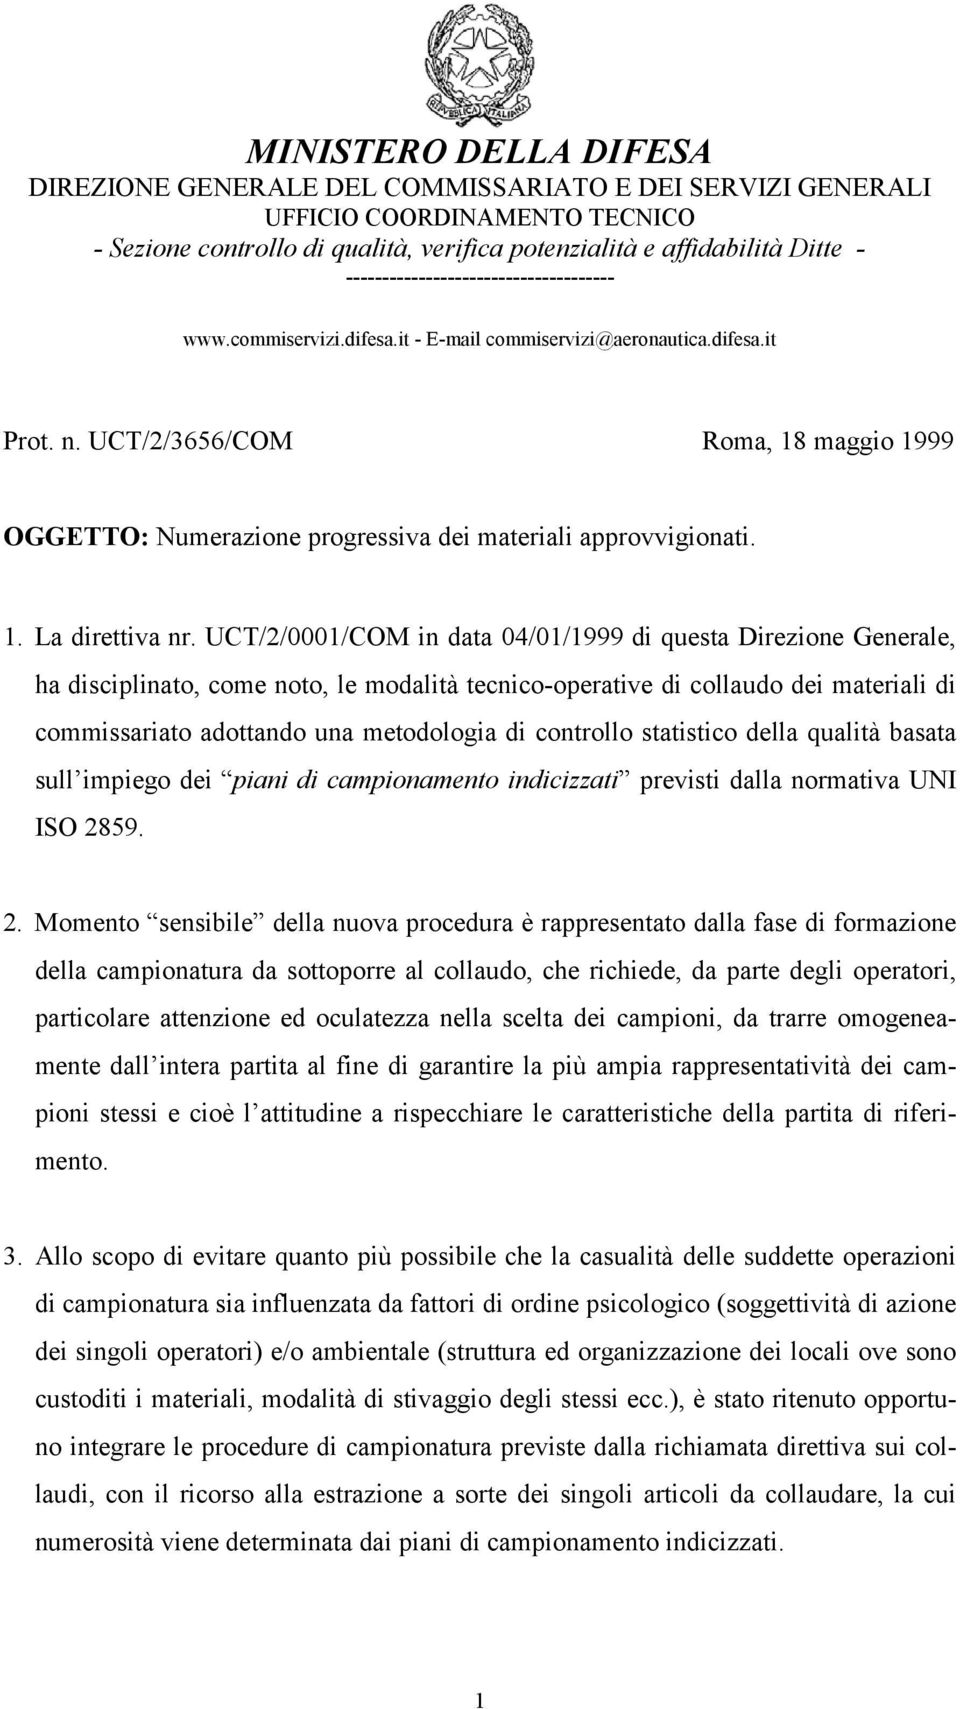 UCT/2/3656/COM Roma, 18 maggio 1999 OGGETTO: Numerazione progressiva dei materiali approvvigionati. 1. La direttiva nr.